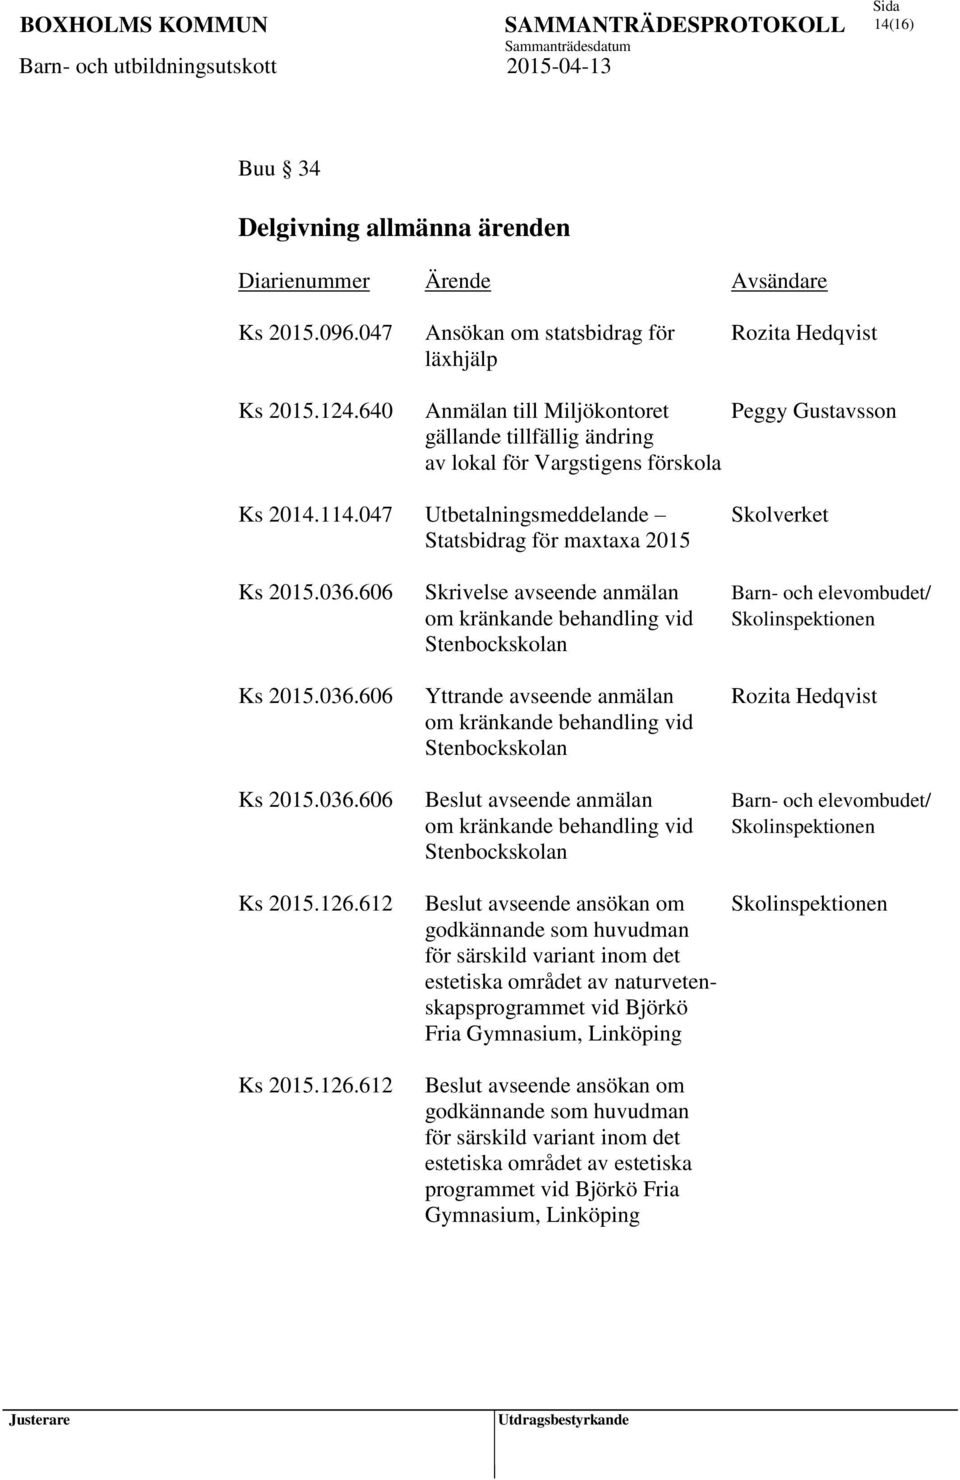 036.606 Skrivelse avseende anmälan Barn- och elevombudet/ om kränkande behandling vid Skolinspektionen Stenbockskolan Ks 2015.036.606 Yttrande avseende anmälan Rozita Hedqvist om kränkande behandling vid Stenbockskolan Ks 2015.